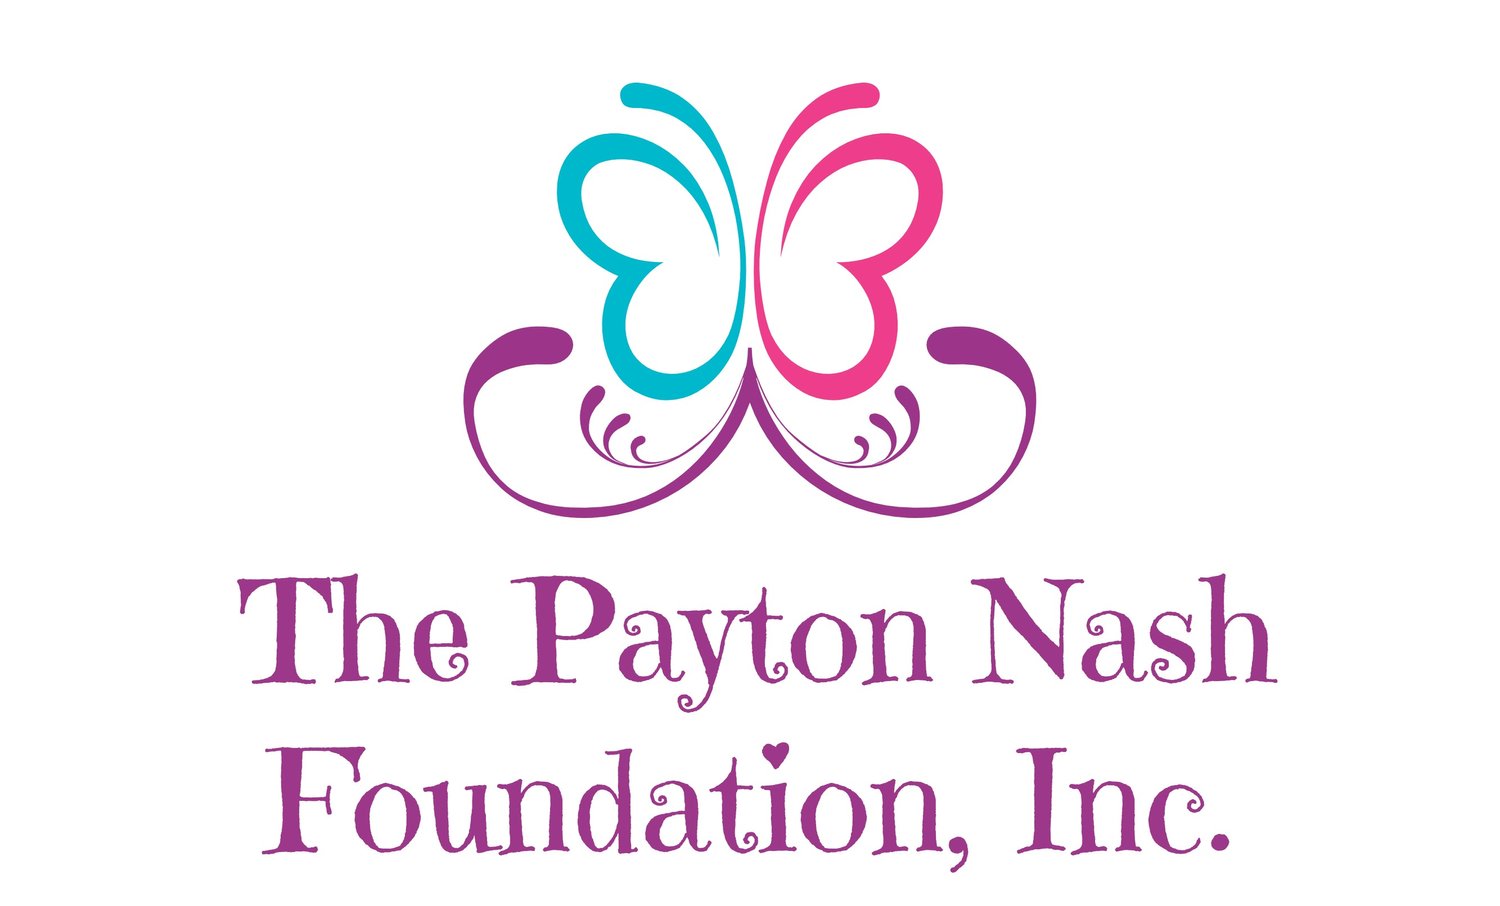 The Payton Nash Foundation, Inc